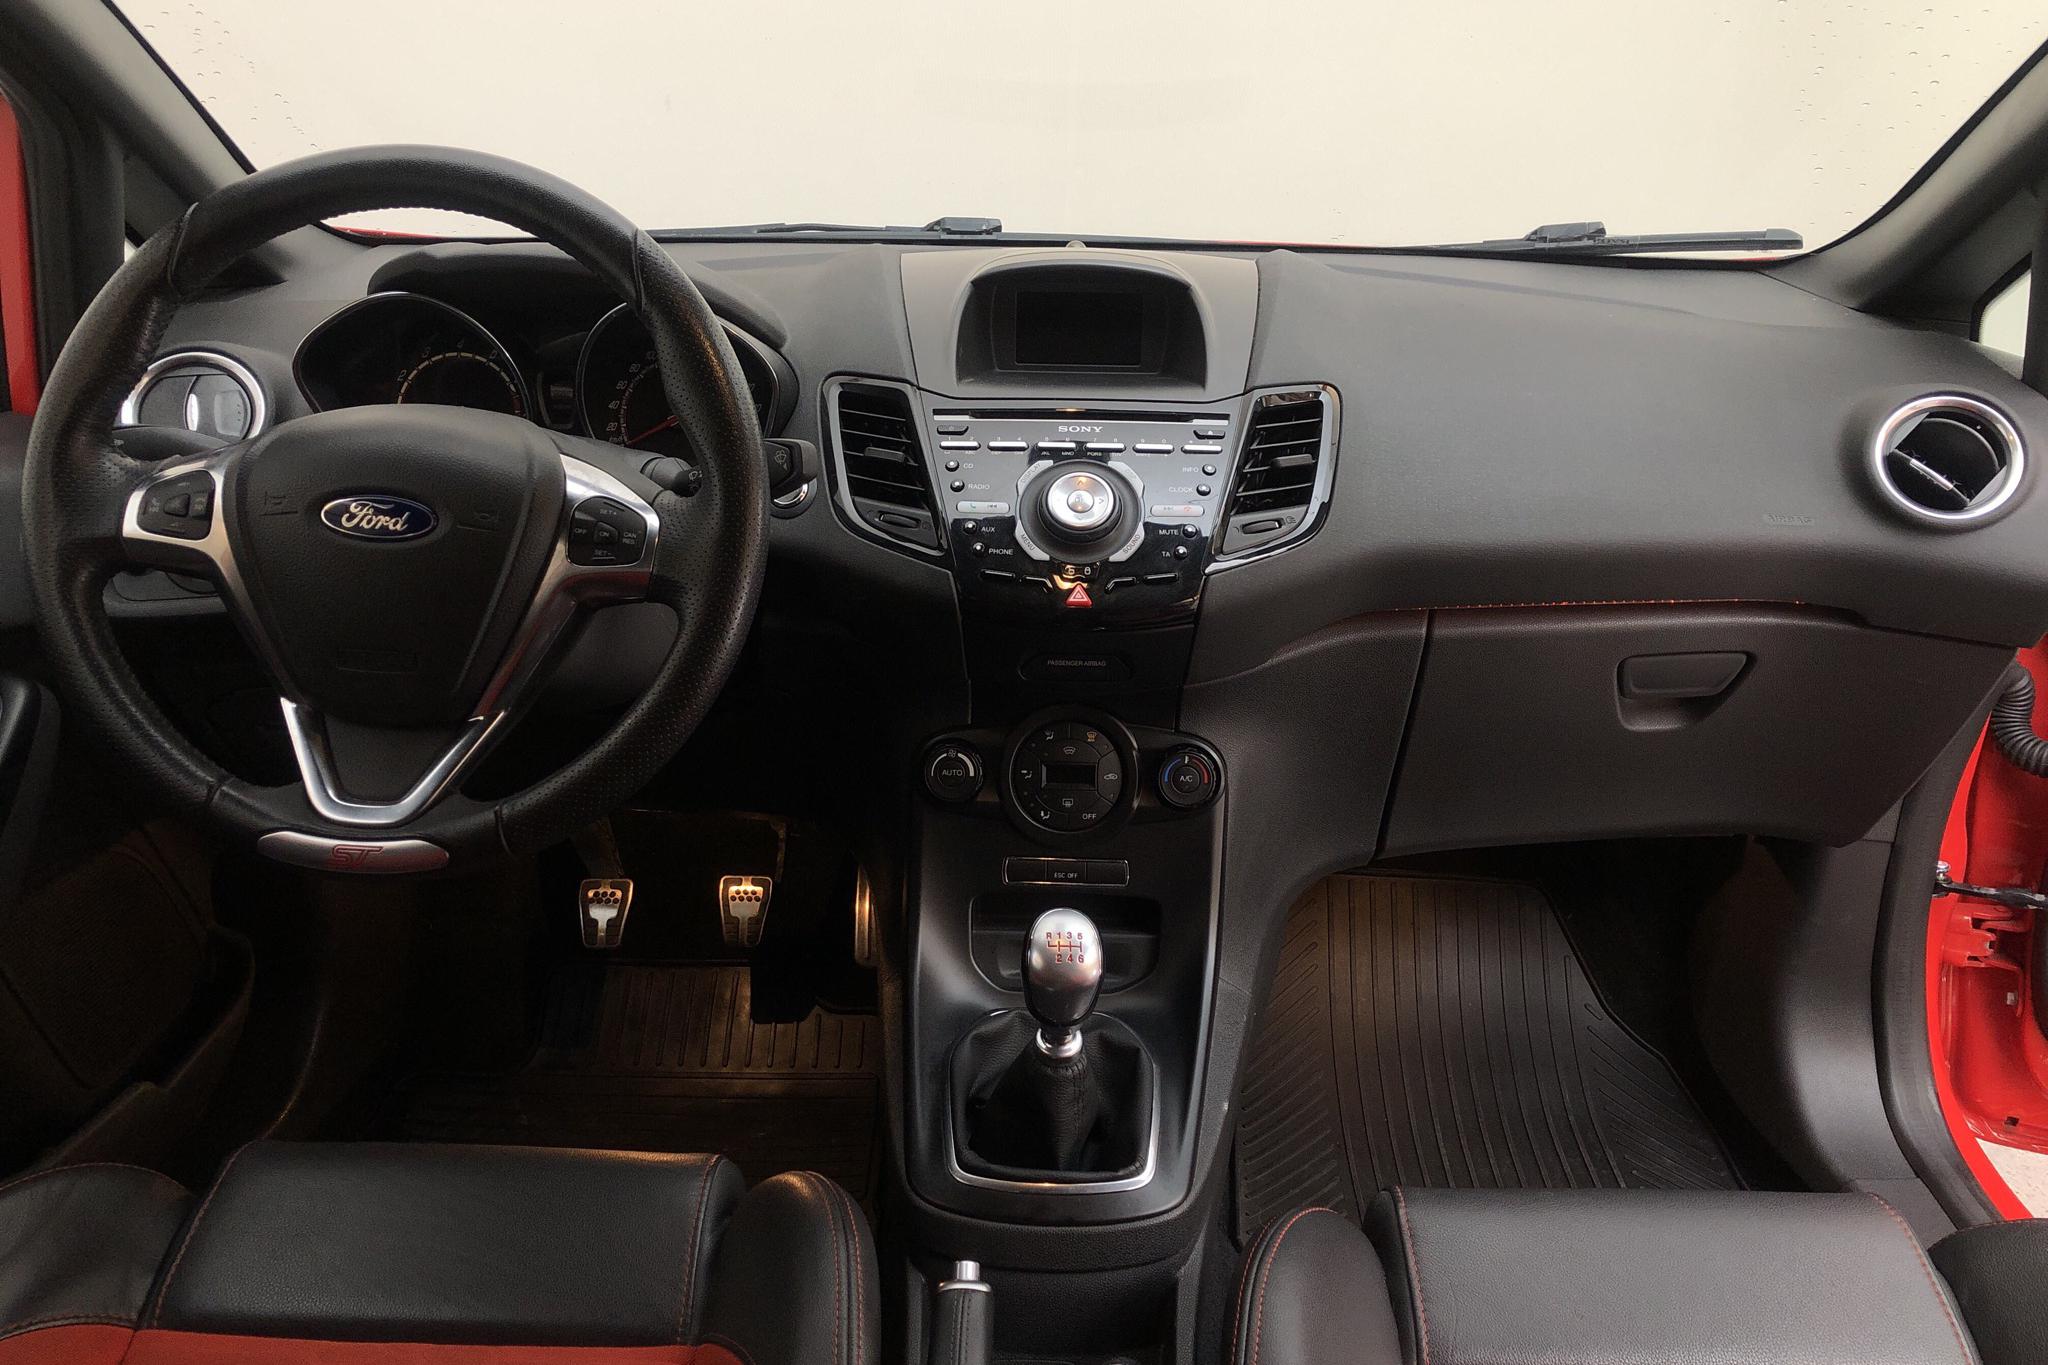 Ford Fiesta 1.6 ST 3dr (182hk) - 7 426 mil - Manuell - orange - 2016